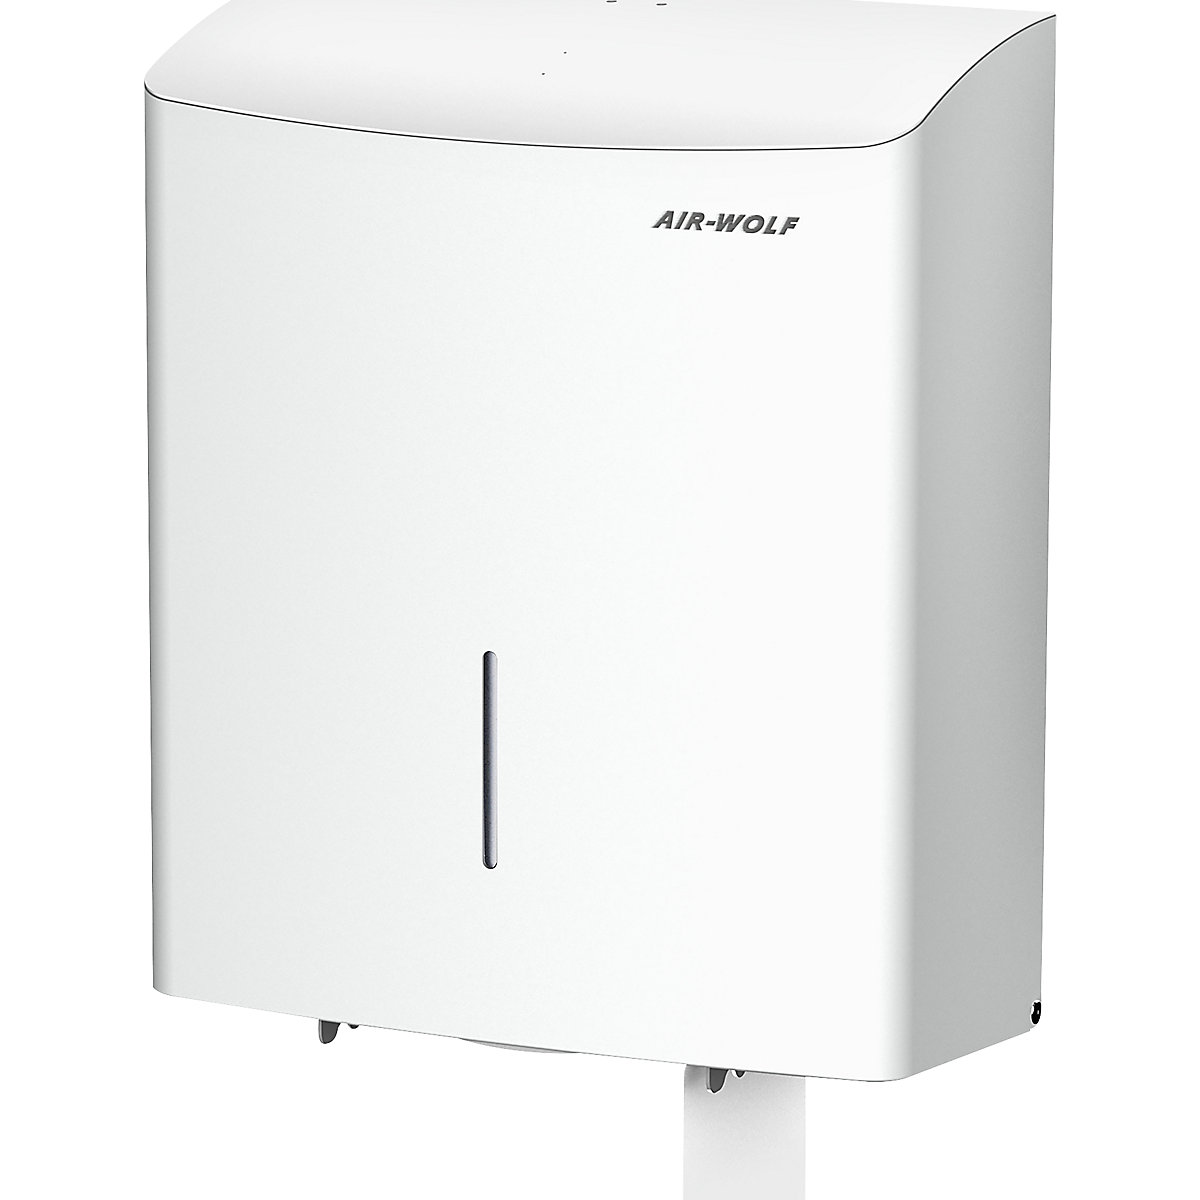 Duplex-Toilettenpapierspender AIR-WOLF, für 1 Großrolle oder 3 Haushaltsrollen, Edelstahl weiß-3